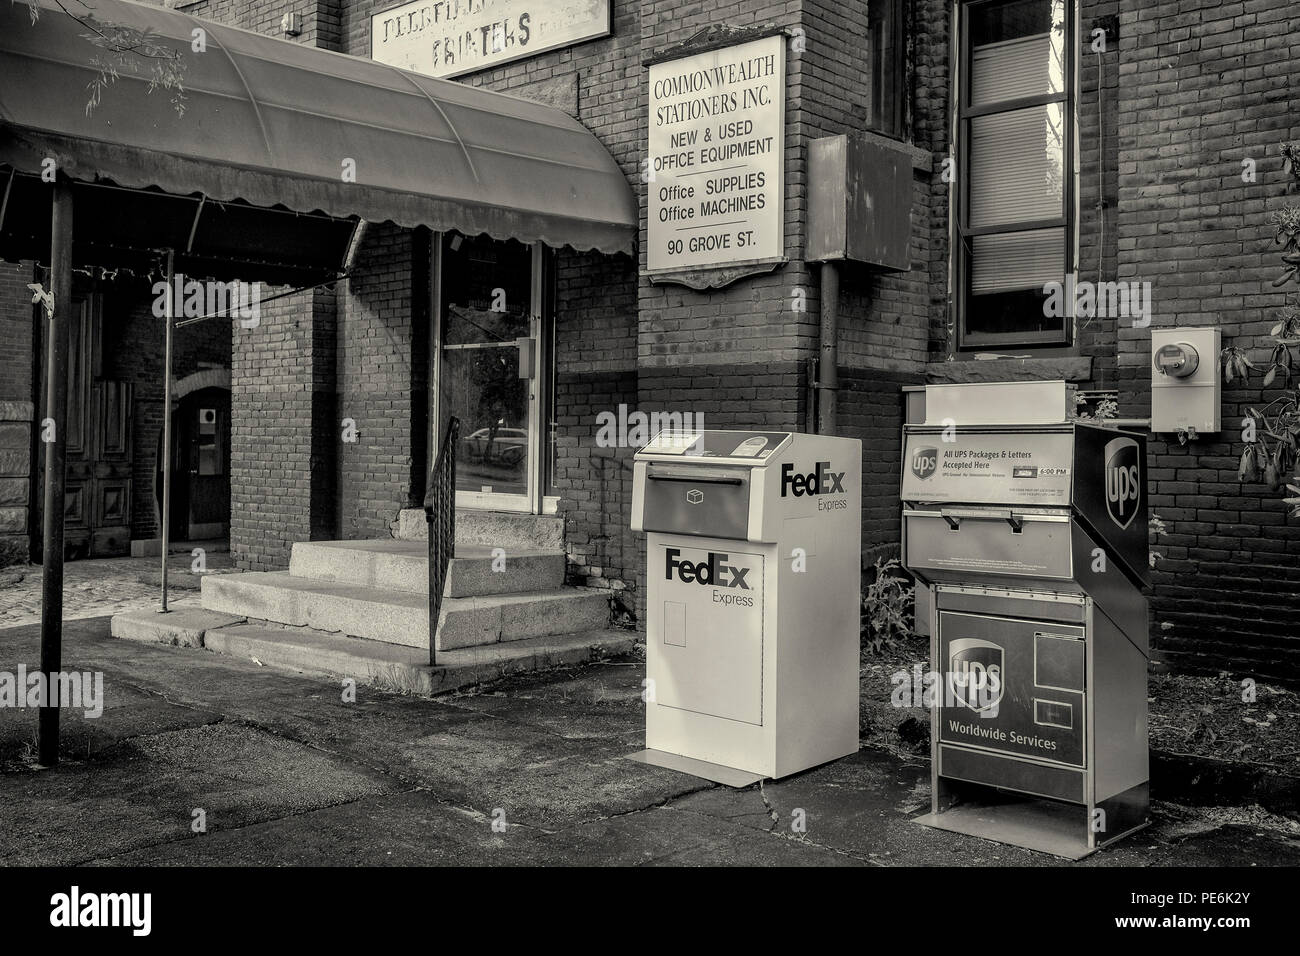 Due caselle postali - UPS e Fedex - nella parte anteriore del Commonwealth cartolai su Grove Street in Worcester, MA Foto Stock